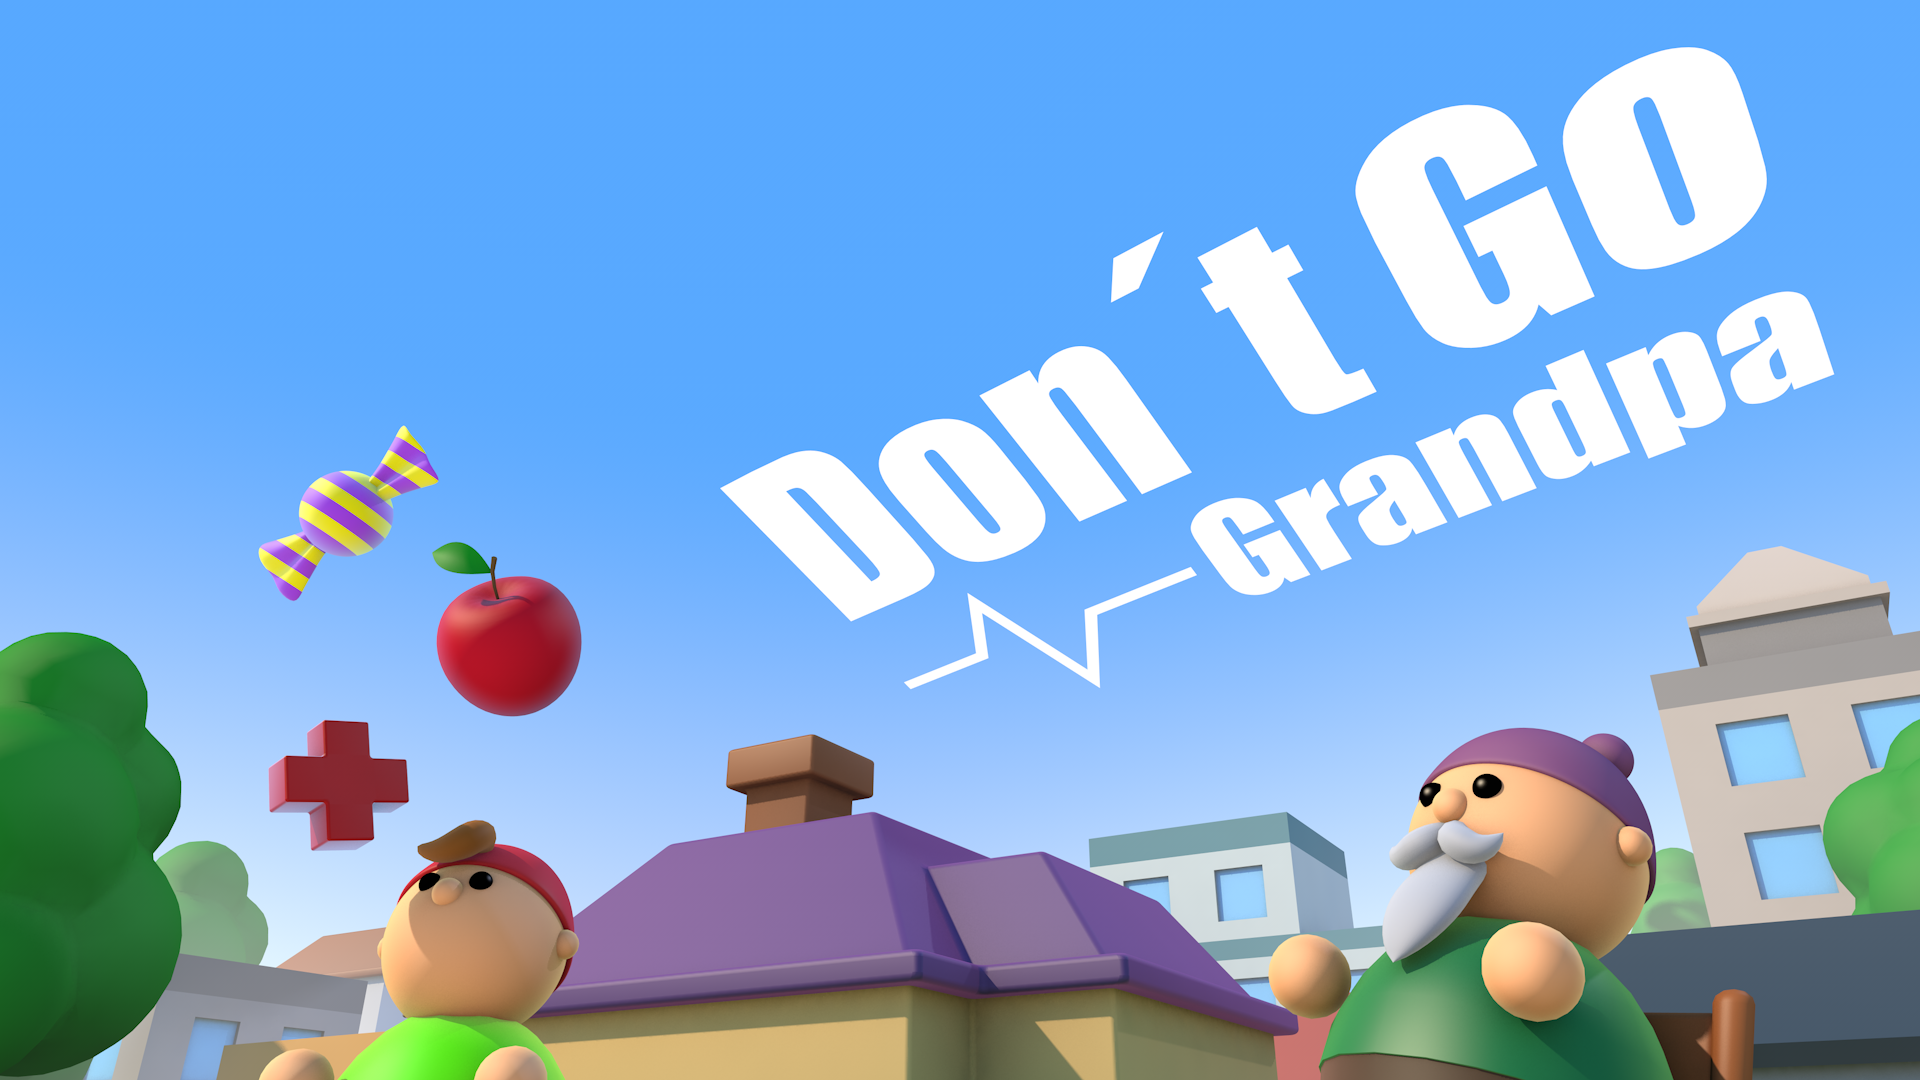 Don't Go Grandpa